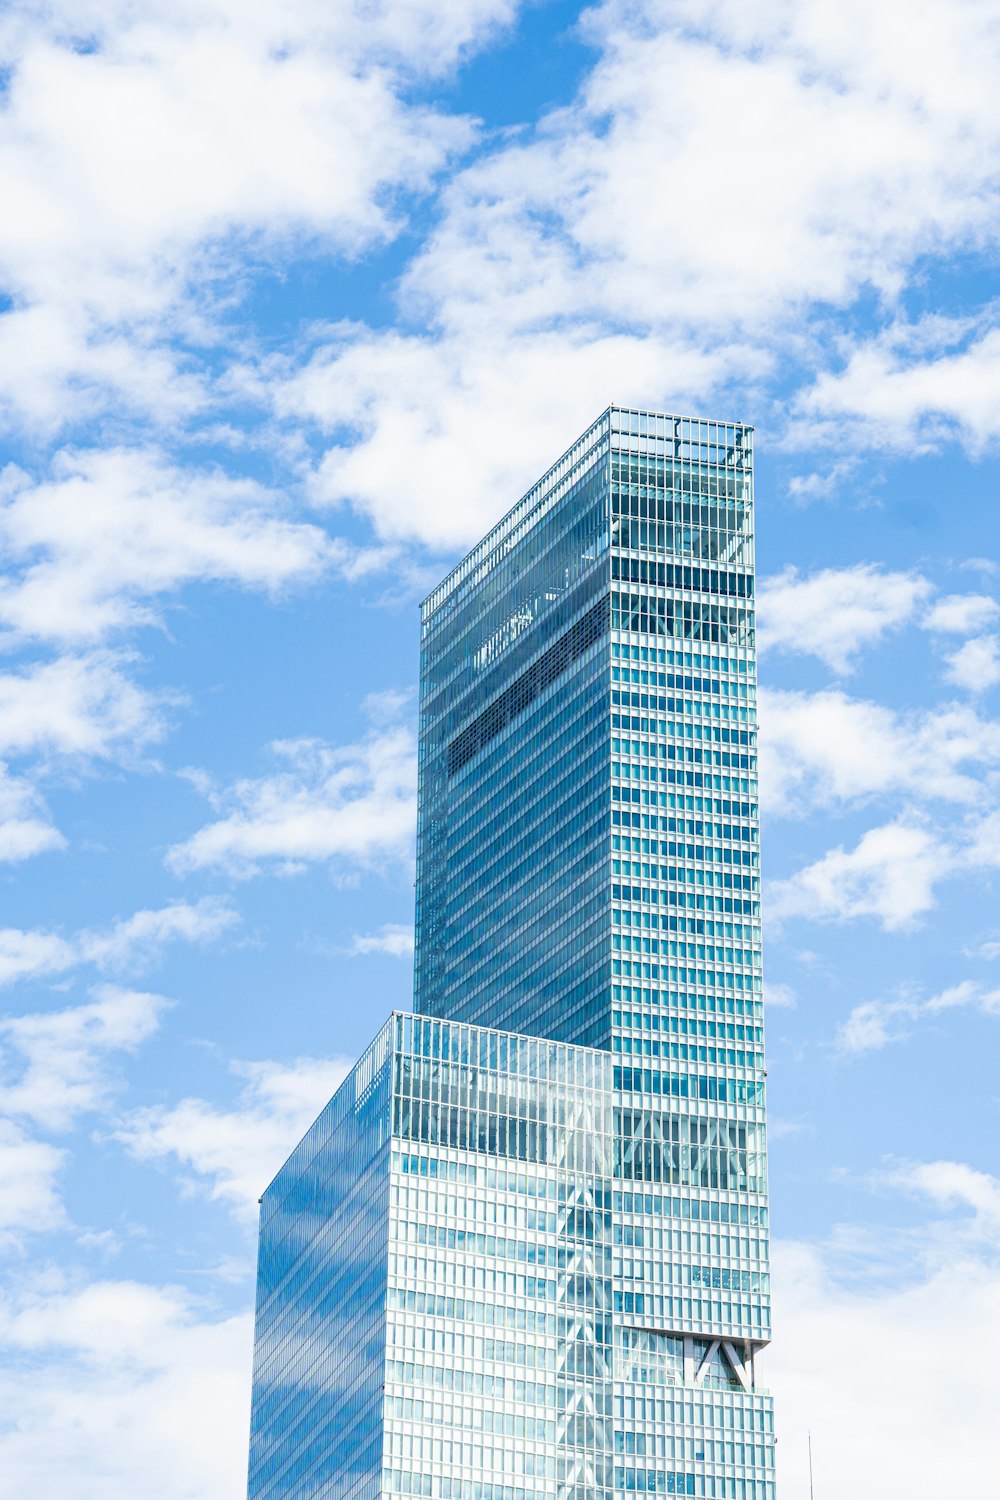 edifício de arranha-céus com paredes de vidro azul sob o céu azul durante o dia